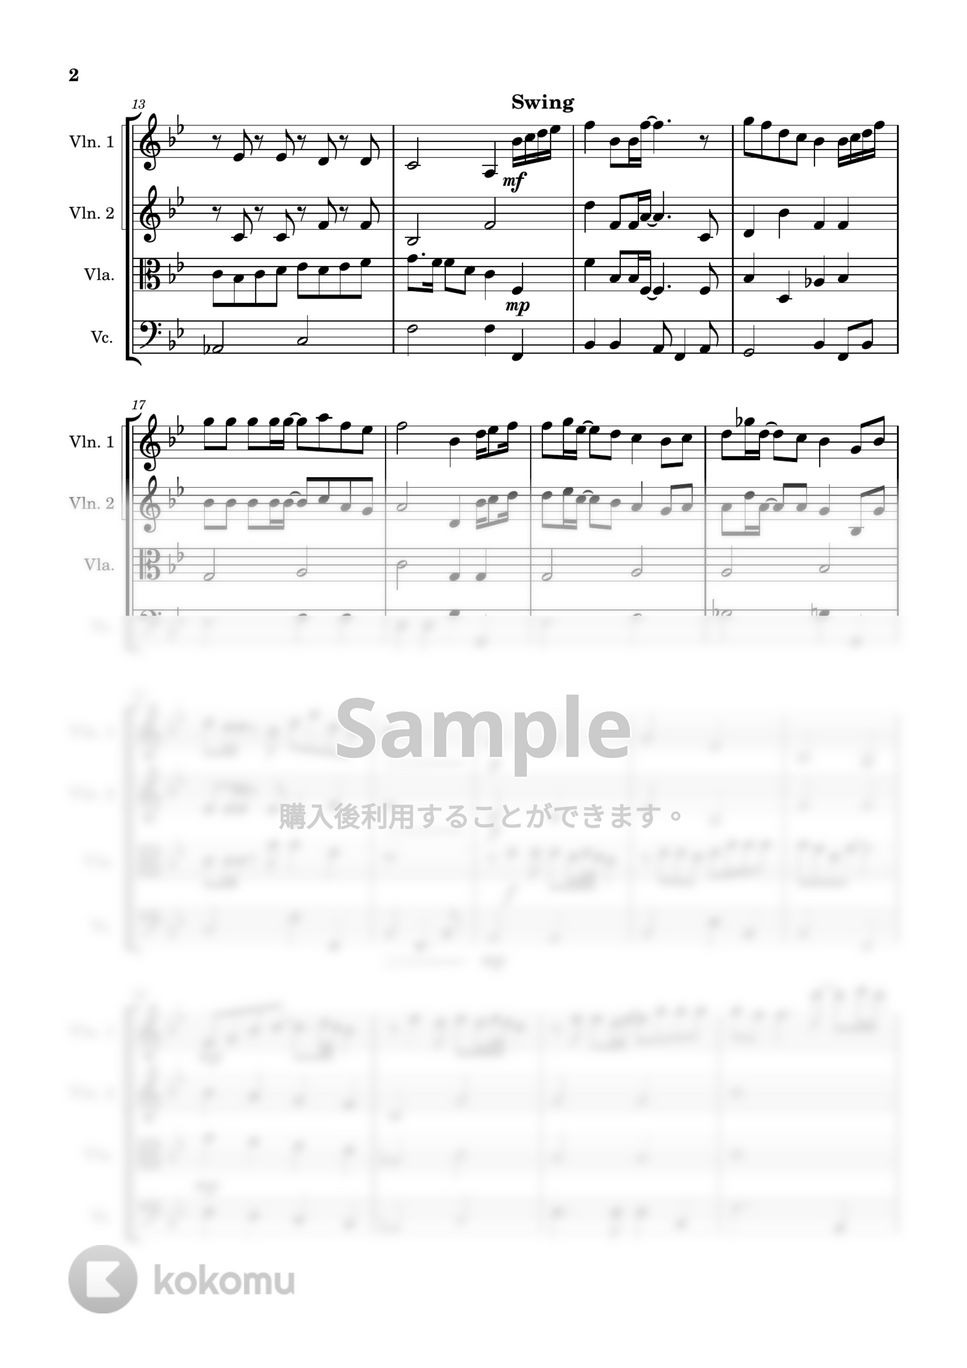 清水翔太 - 花束のかわりにメロディーを (弦楽四重奏) by Cellotto